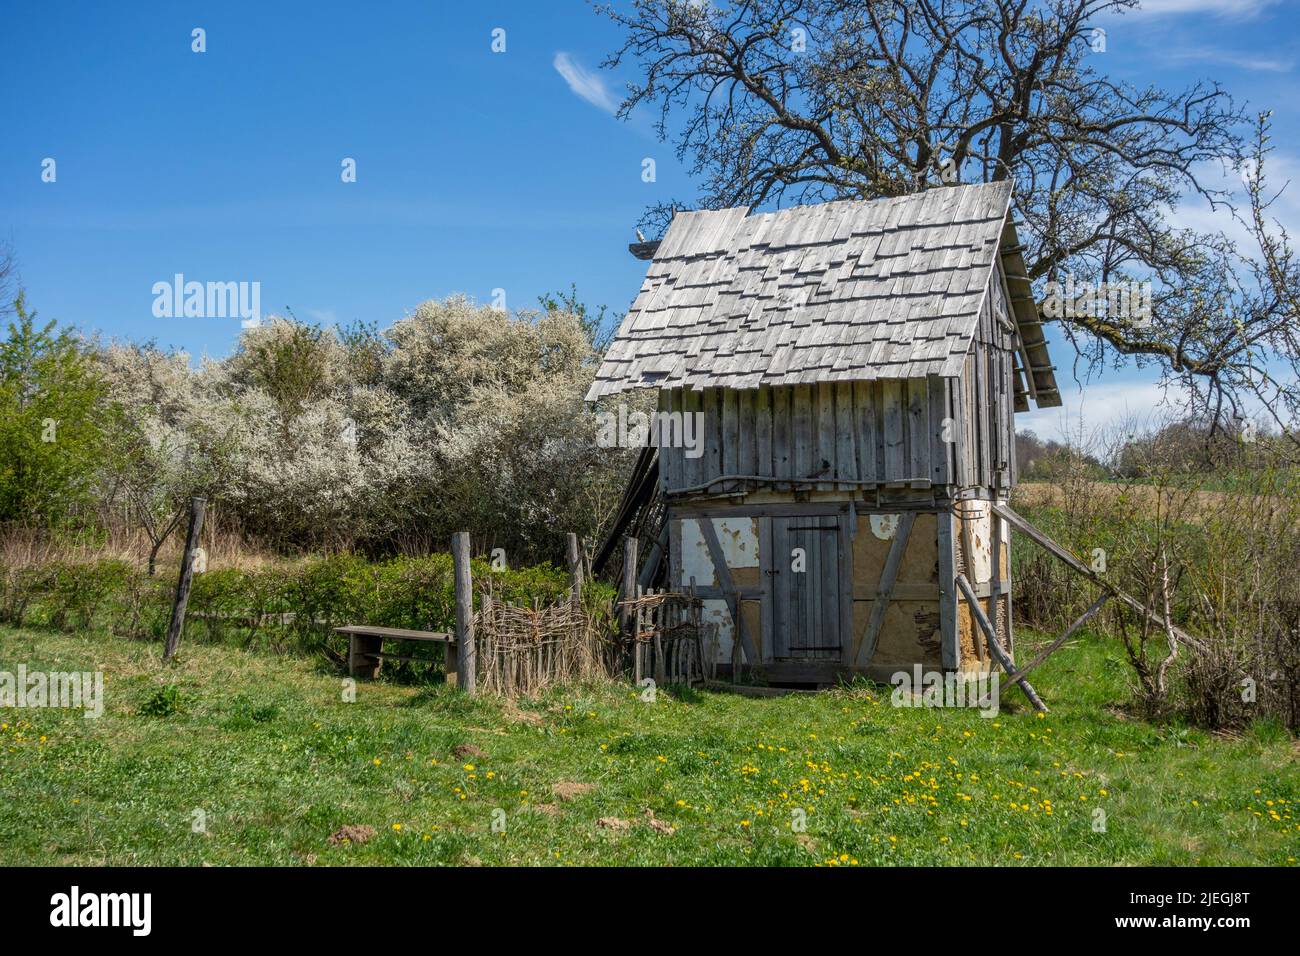 Cabaña medieval de madera en ambiente soleado a principios de primavera Foto de stock